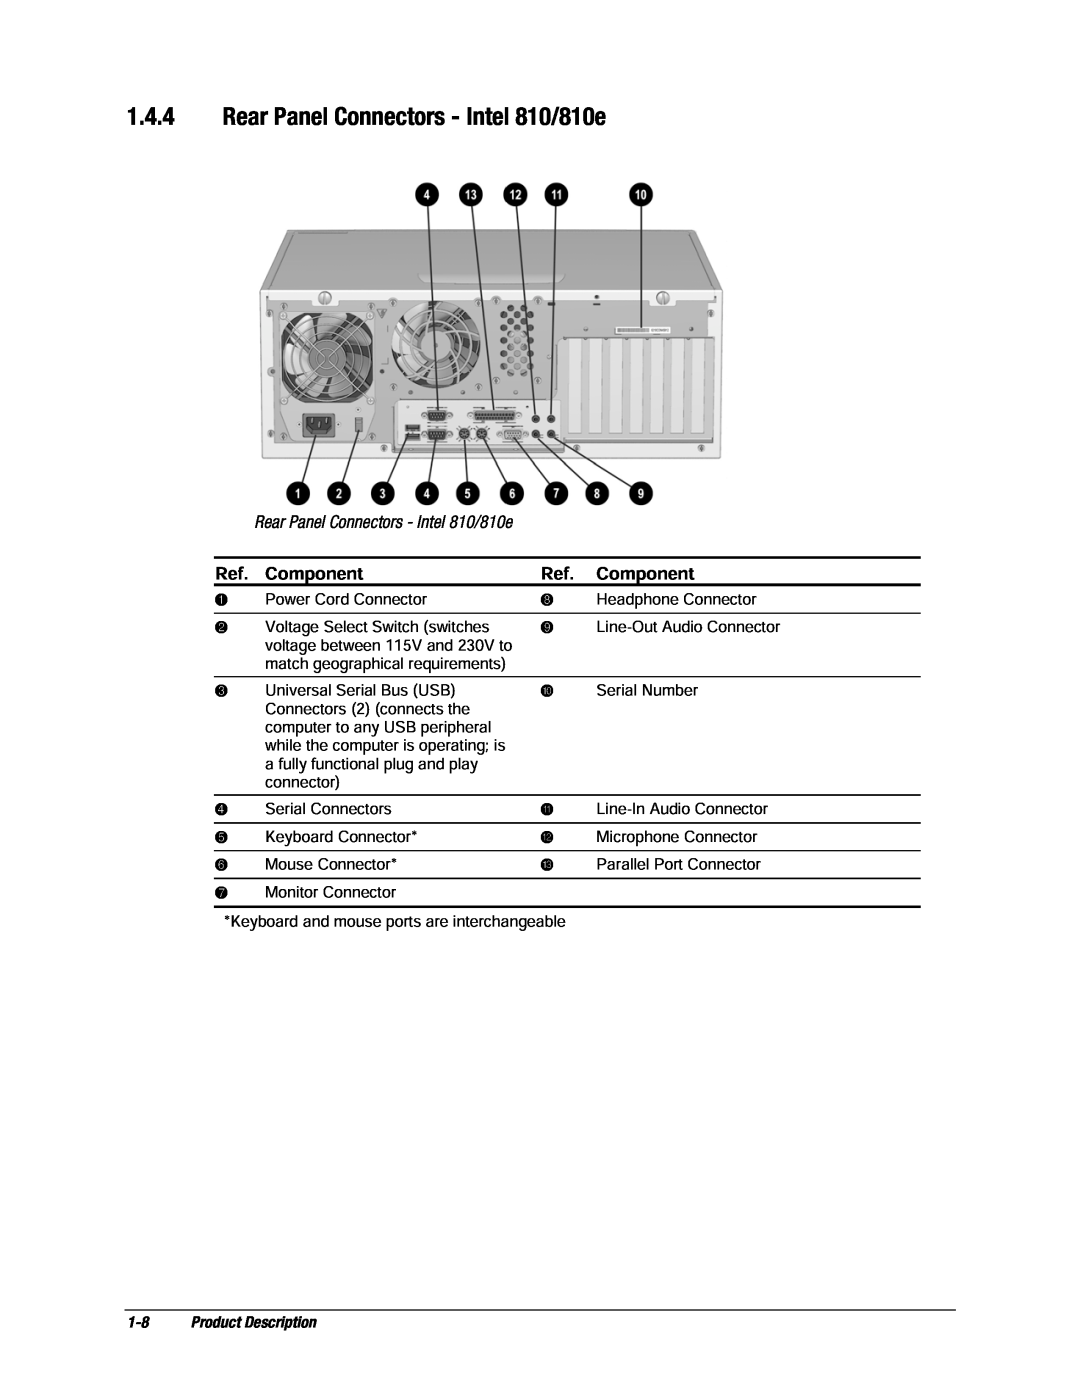 Compaq EP Series manual Rear Panel Connectors - Intel 810/810e, Component, Product Description 